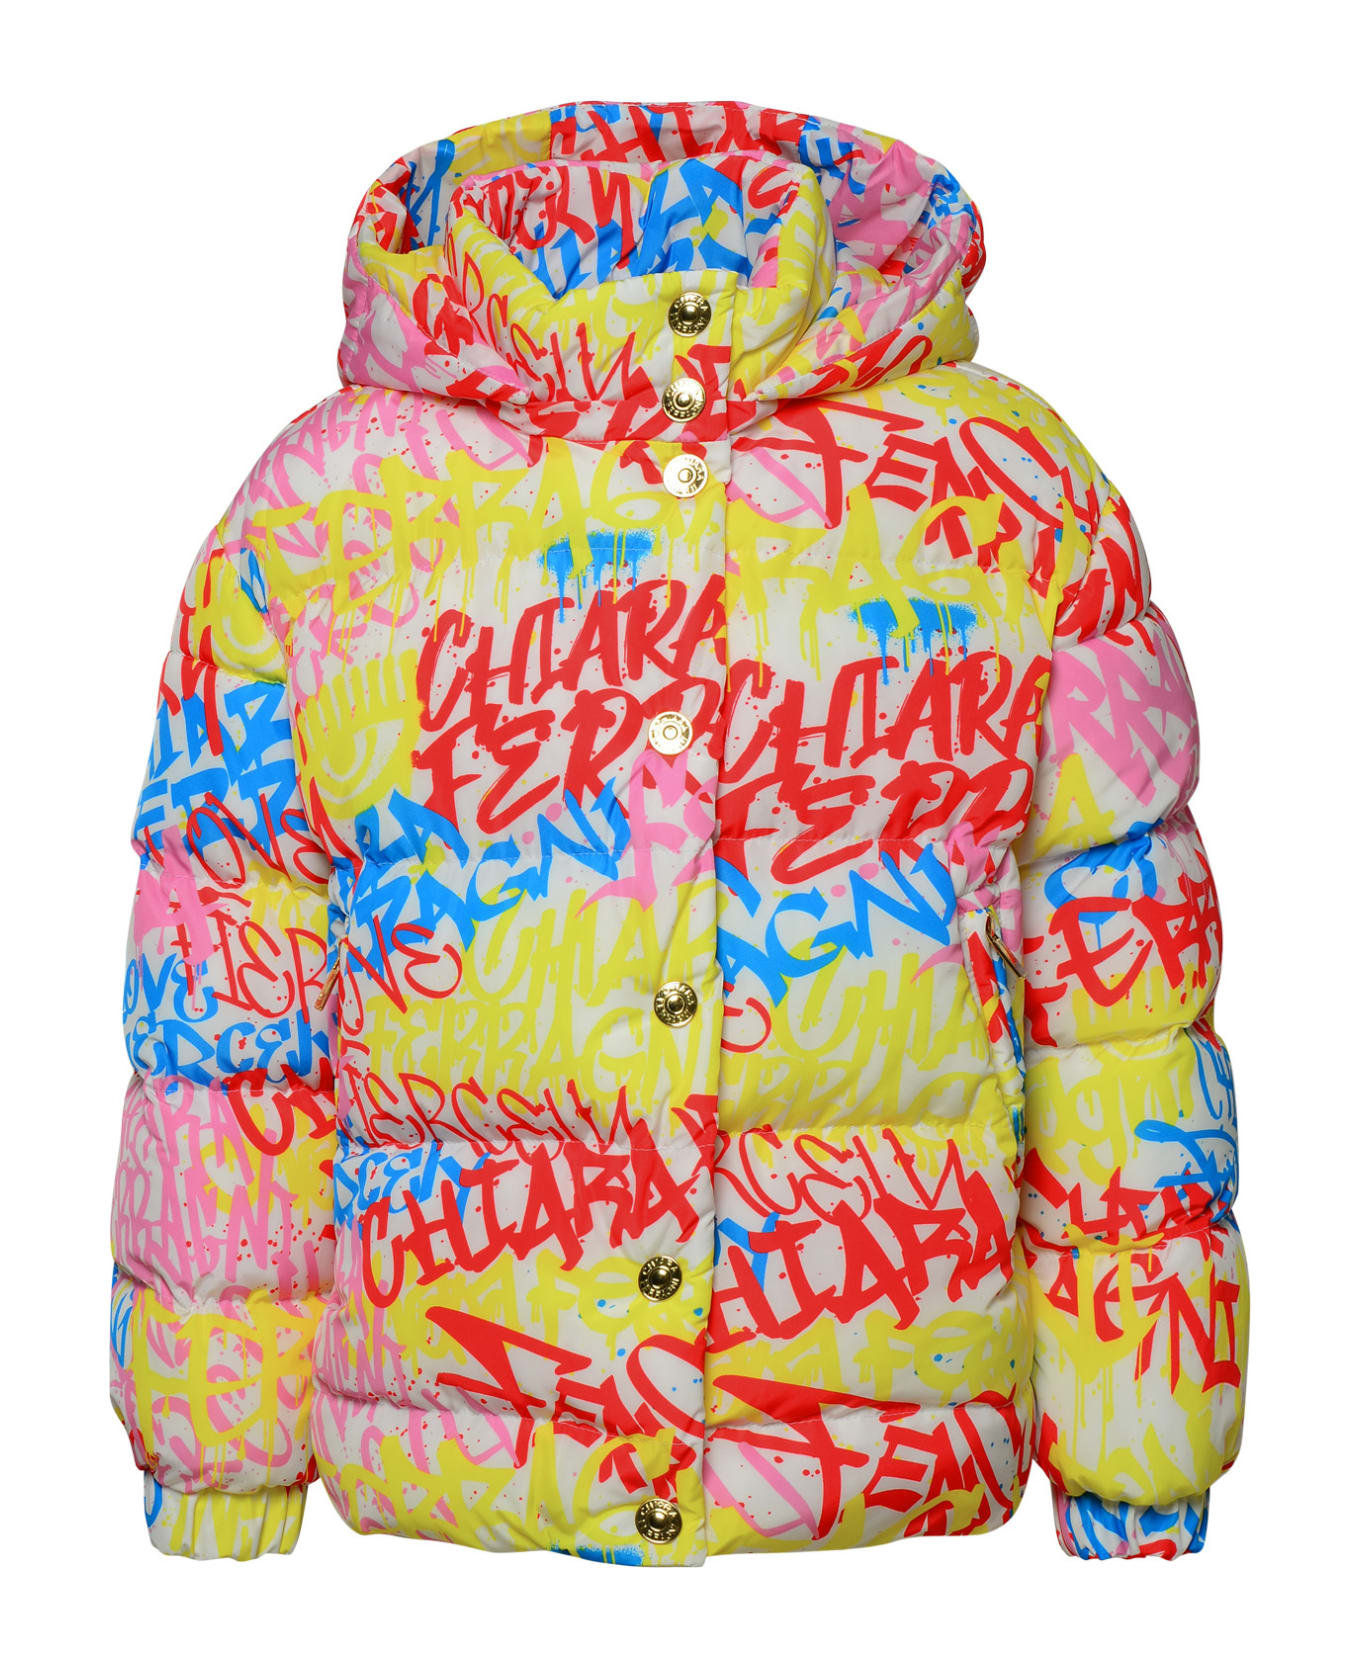 Chiara Ferragni Multicolor Polyester Down Jacket - Multicolor